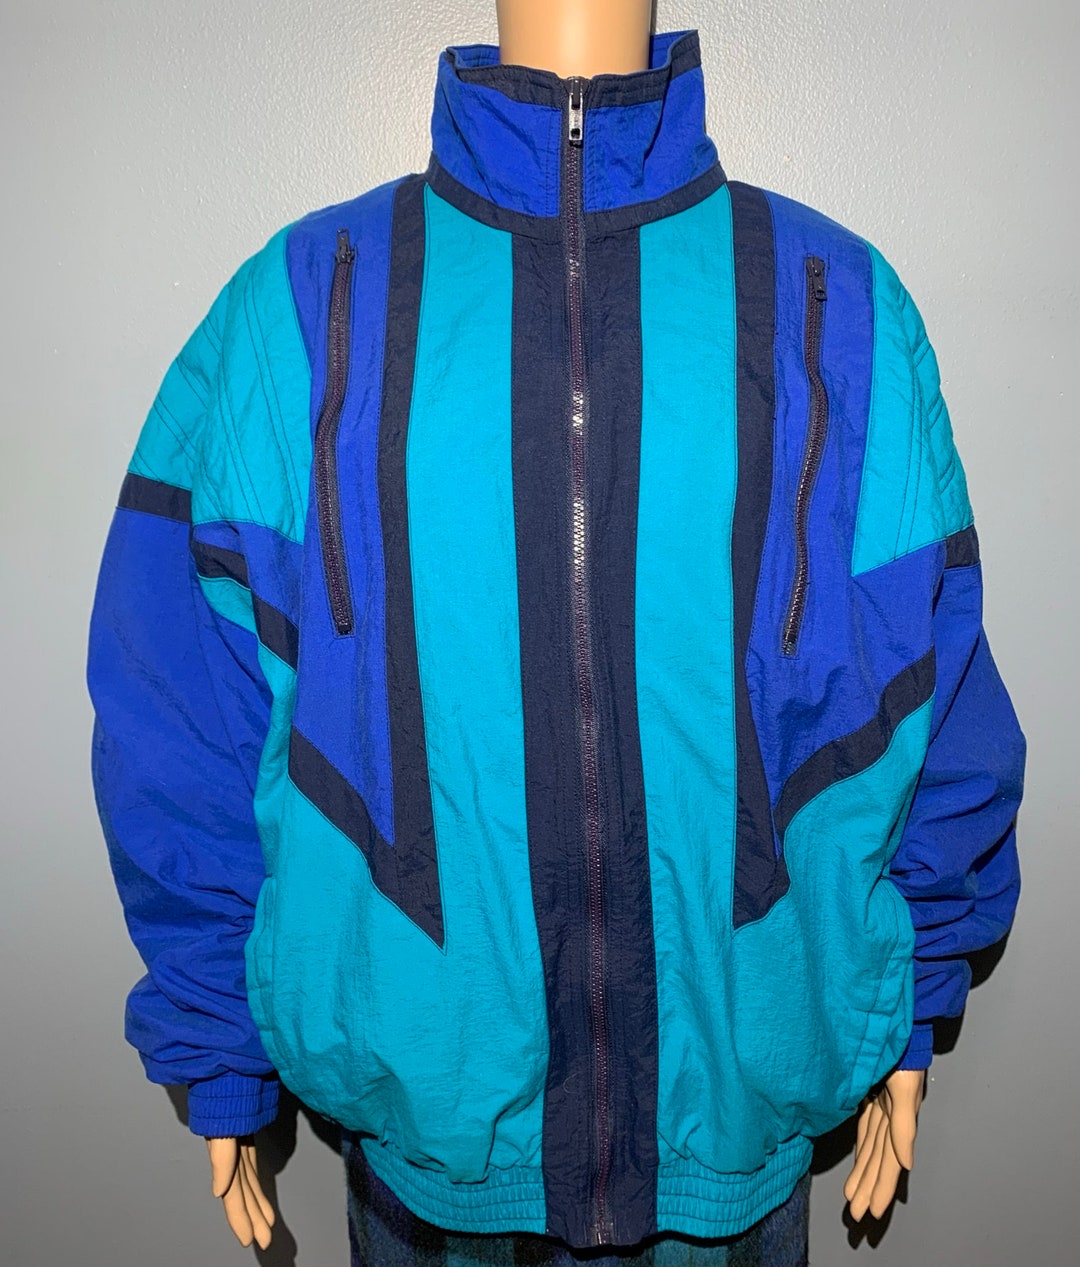 Vintage 1990s Blue and Teal Speedo Athletic Windbreaker Jacket Adult ...